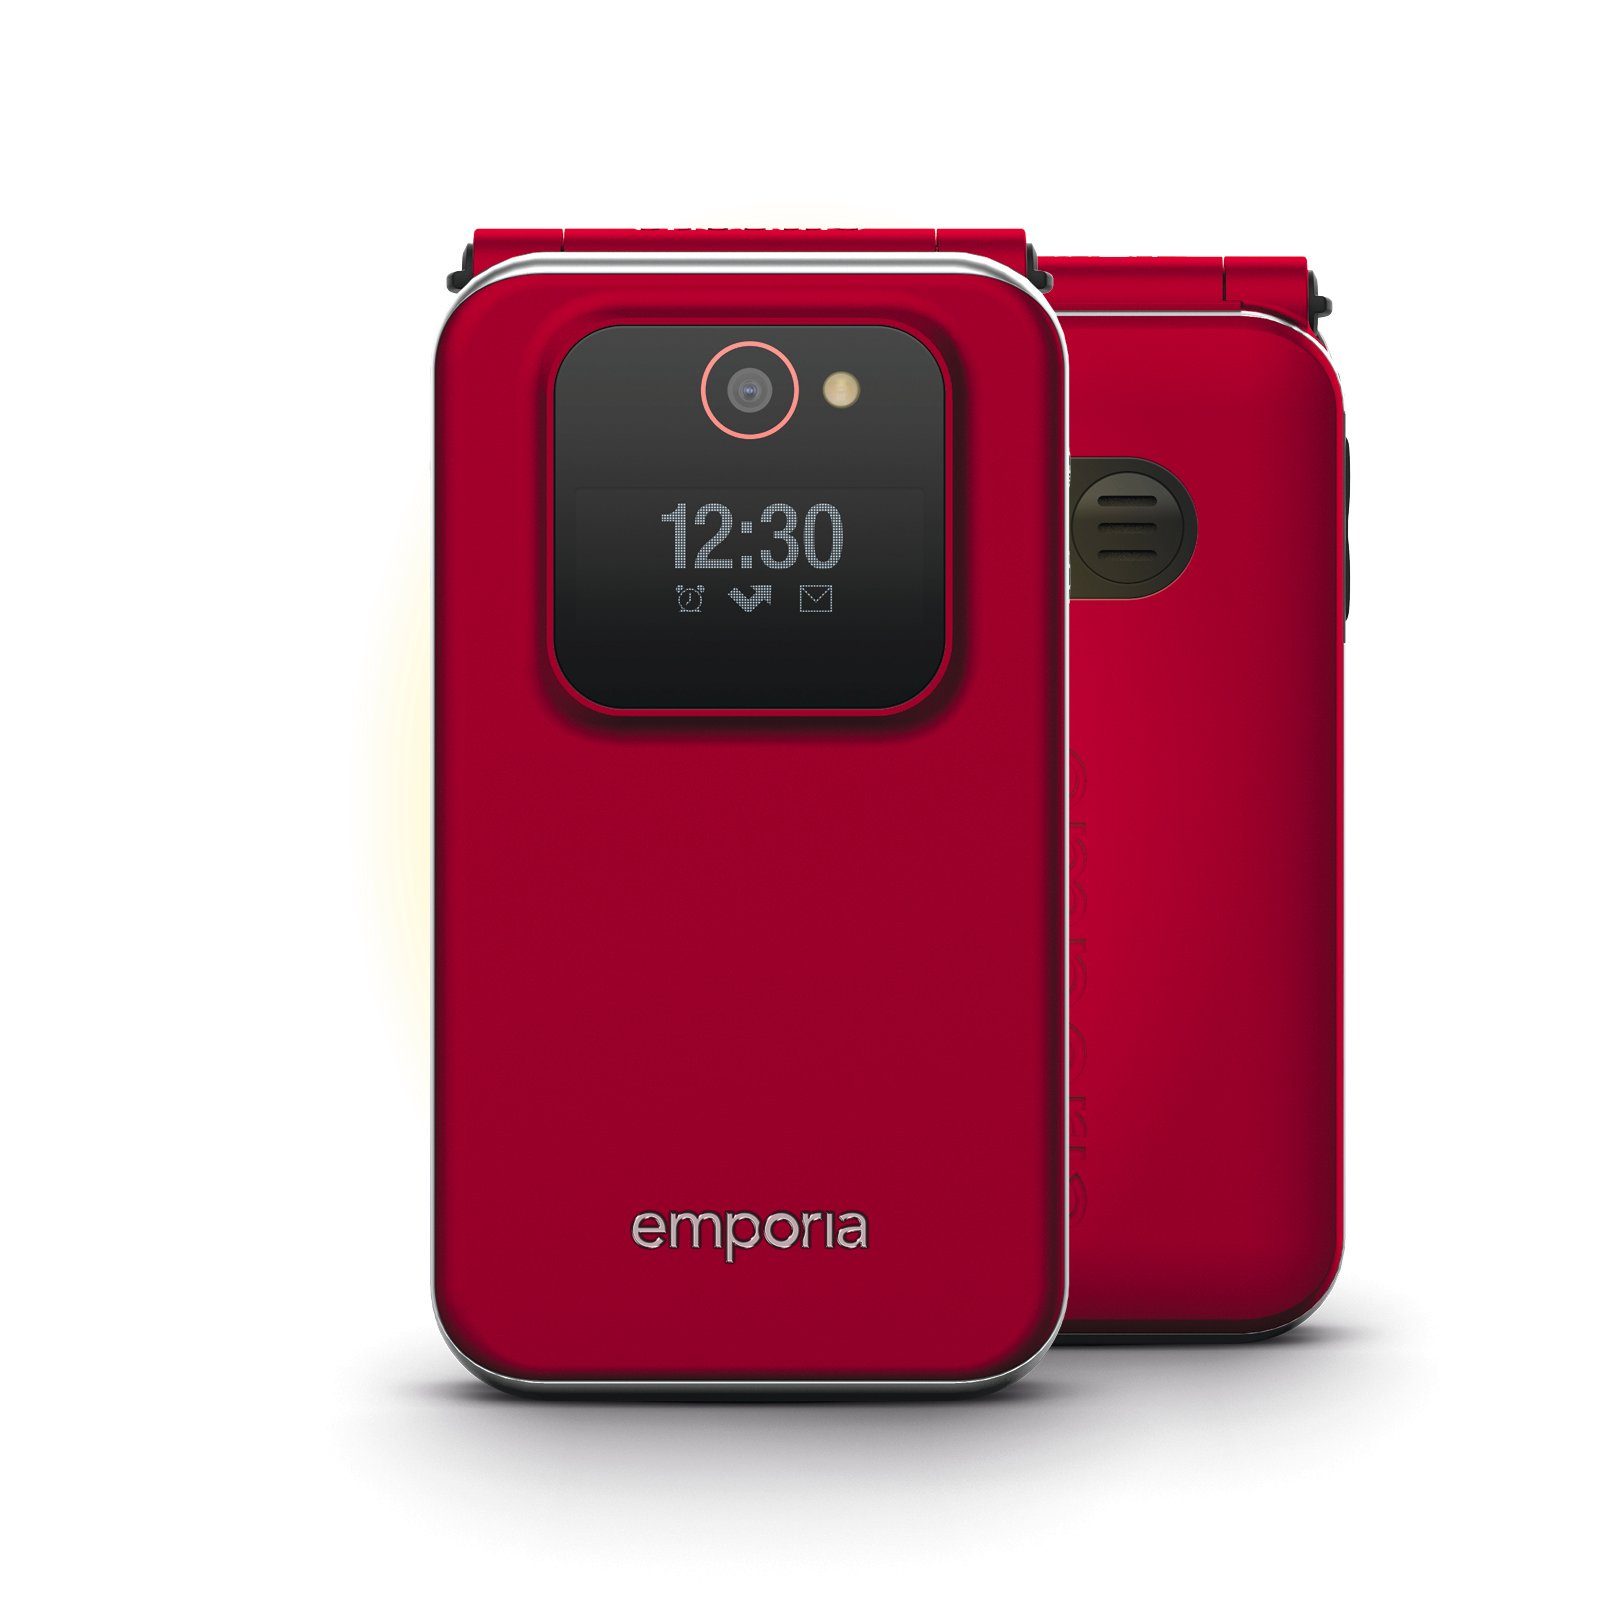 2,8 GB 7,1 (1,1) Außendisplay cm Emporia / 0,128 V228-2G Innendisplay (7,1 cm Speicherplatz), JOY Zoll, Smartphone (2,8) cm/2,8